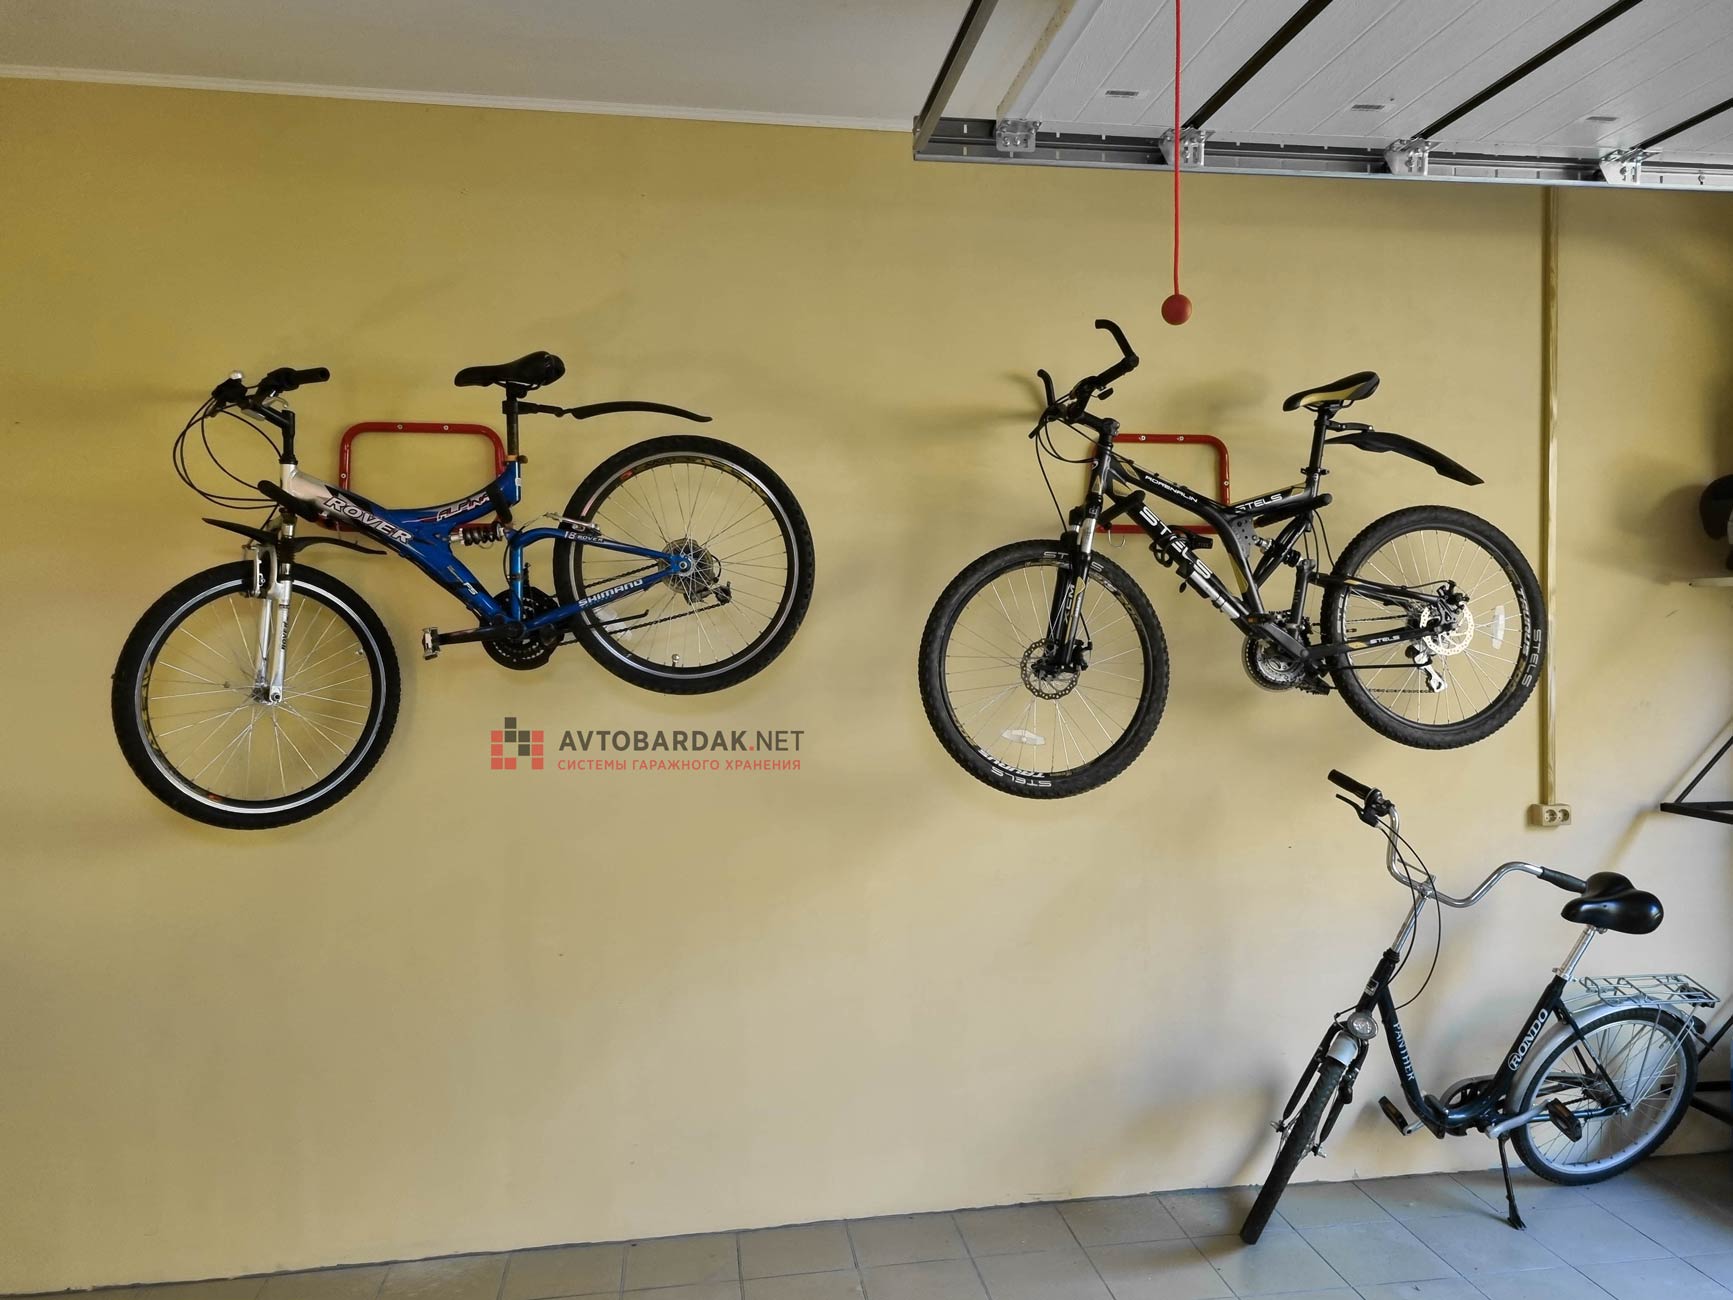 Все виды креплений для хранения велосипедов: от улицы до квартиры